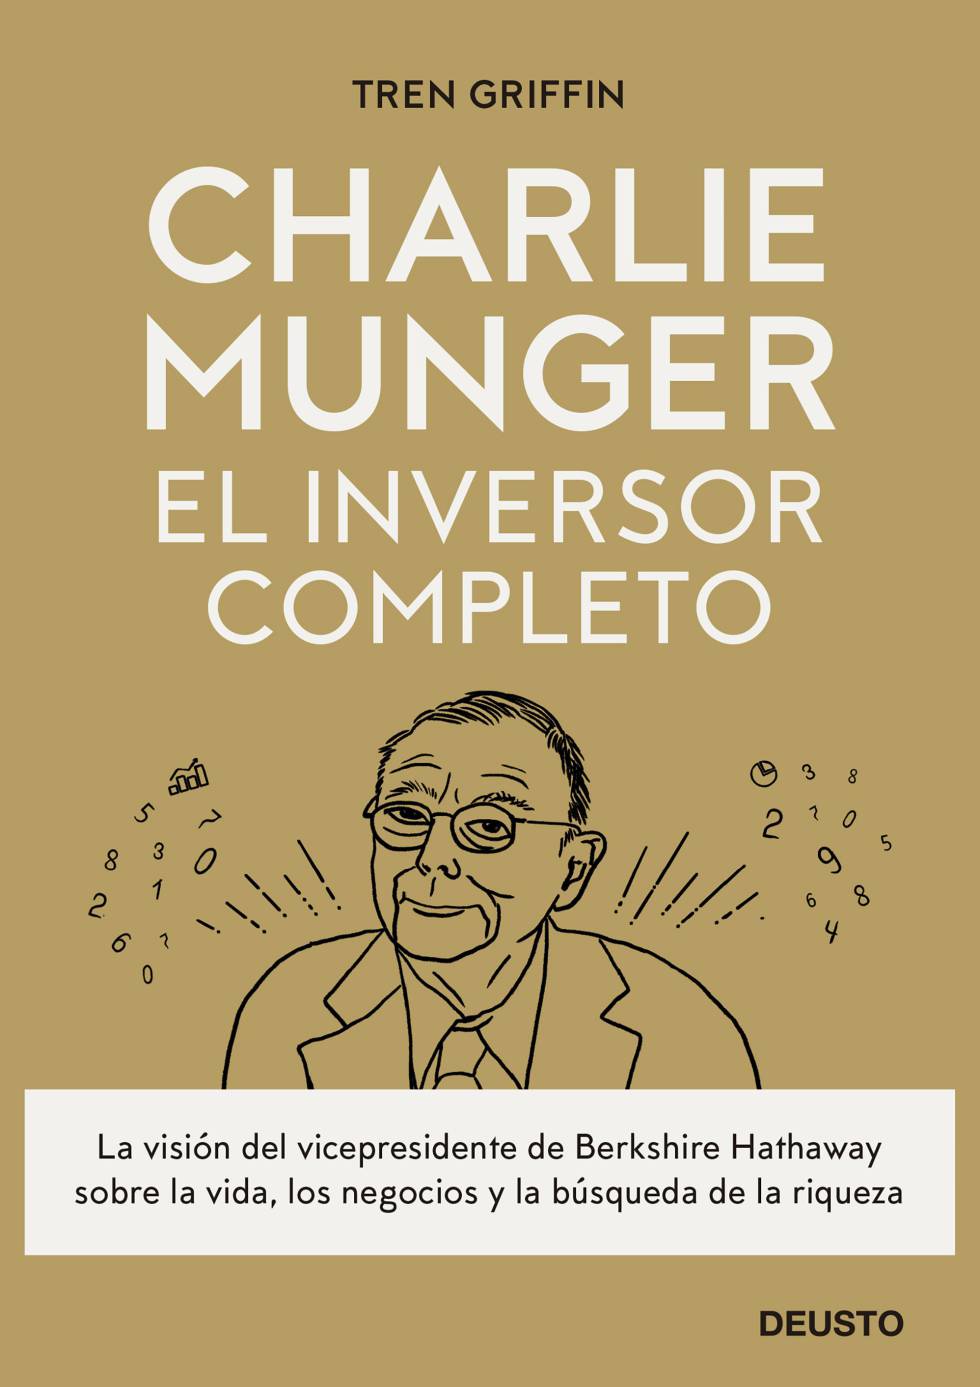 Portada del libro 'Charlie Munger: el inversor completo'.